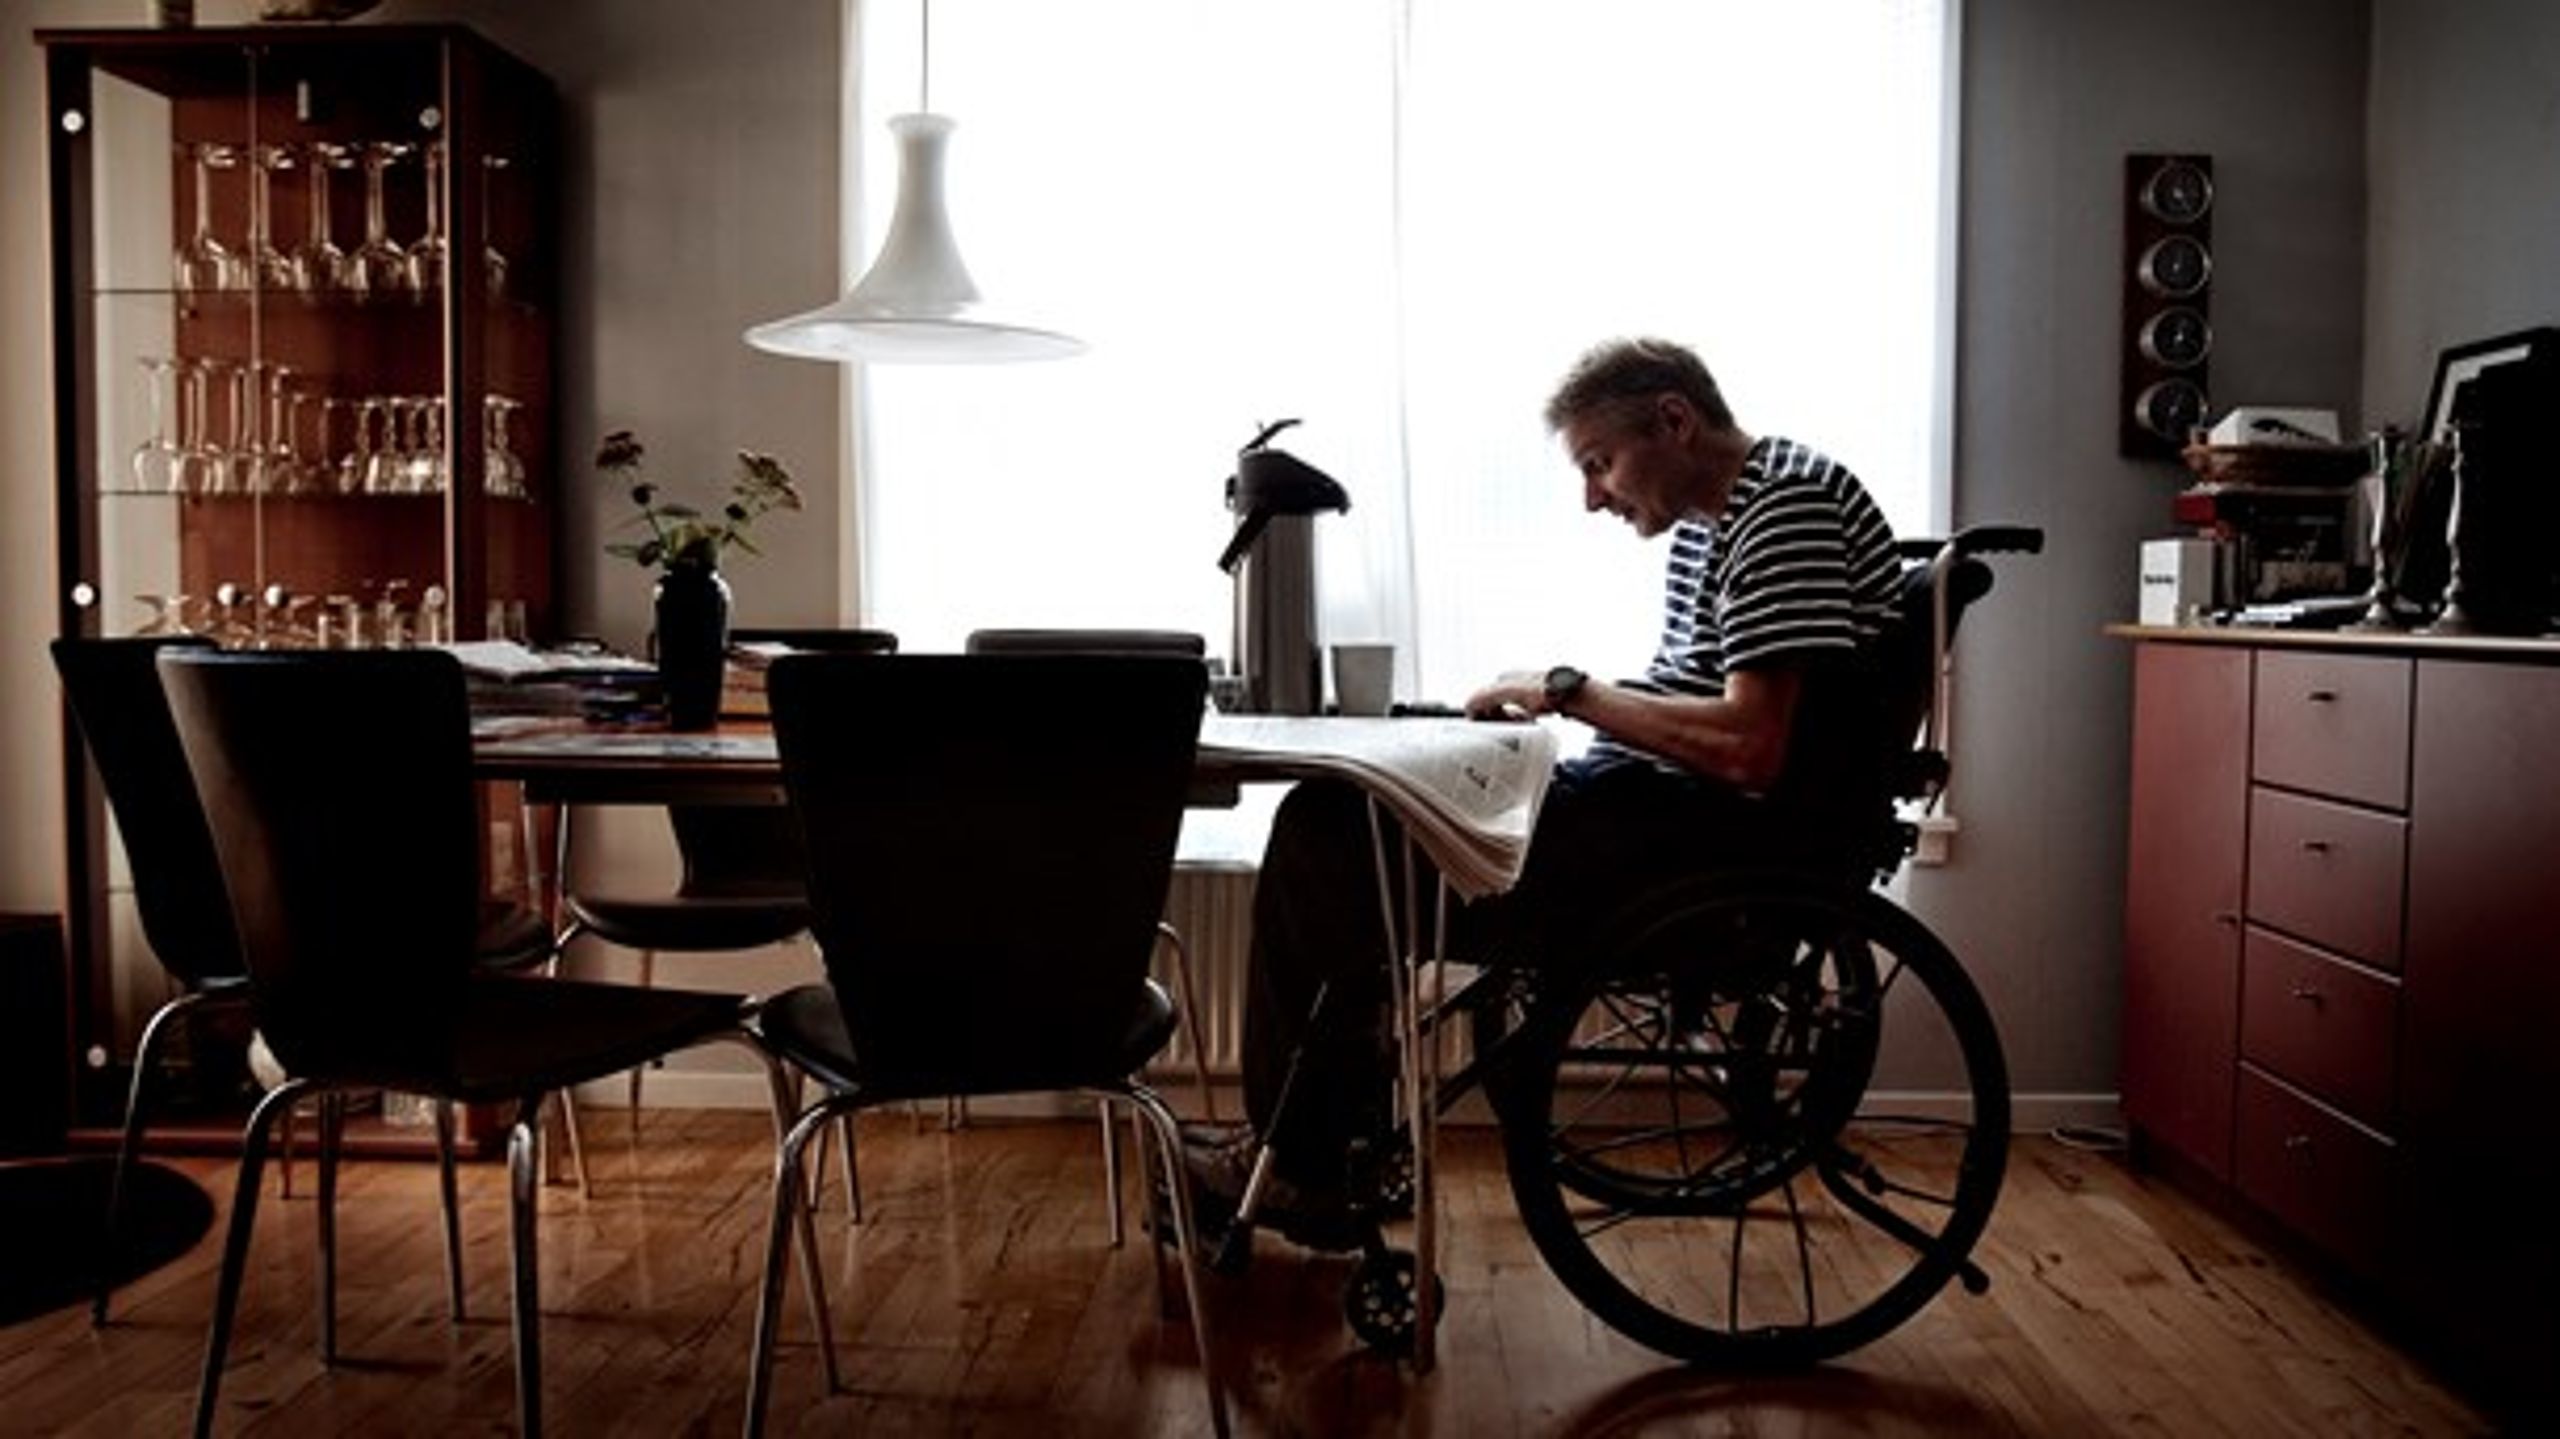 For mange danskere har en berøringsangst over for mennesker med handicap, skriver Kristine Nielsen fra Frivilligjob.dk. (Arkivfoto: Bax Lindhardt/Ritzau Scanpix)